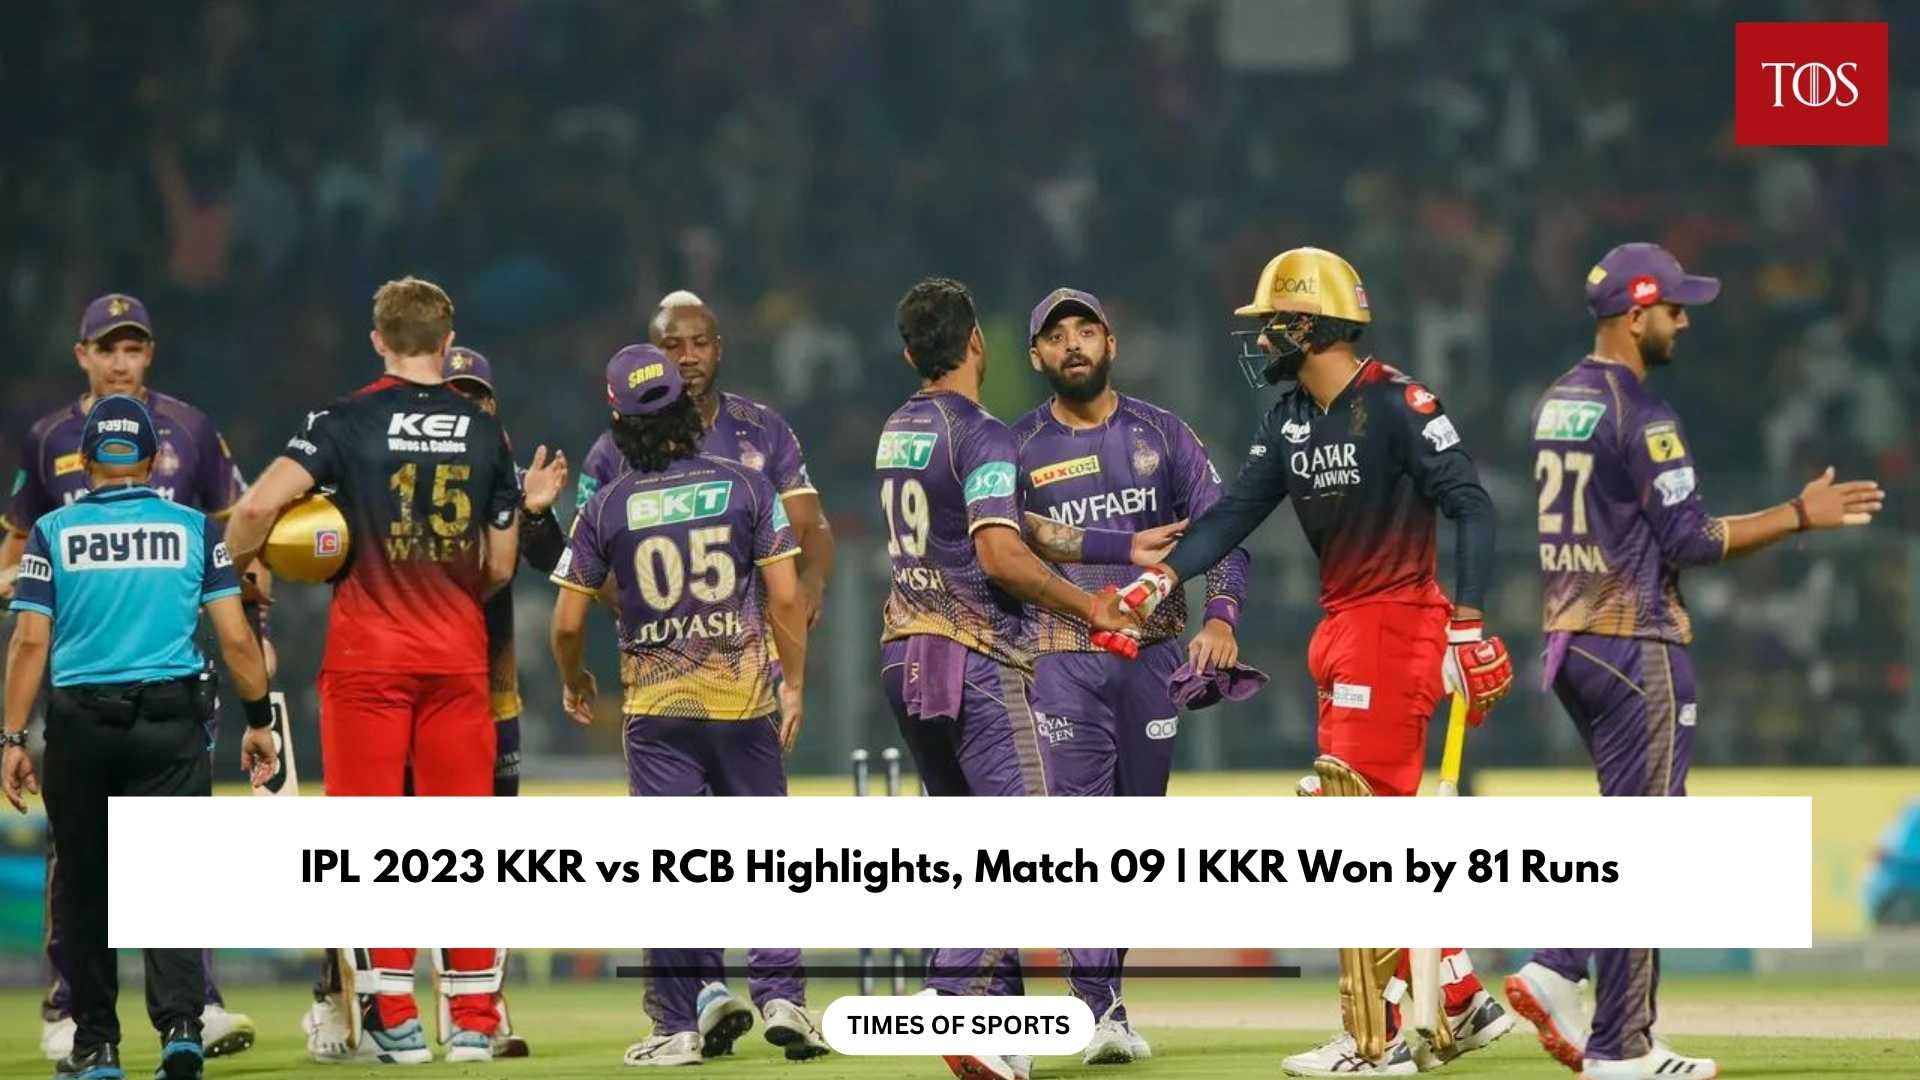 IPL 2023 KKR vs RCB Highlights, Match 09 KKR Won by 81 Runs